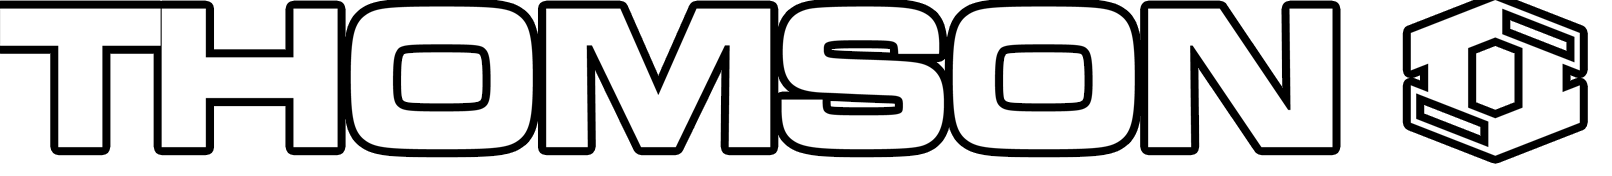 Thomson moto logo